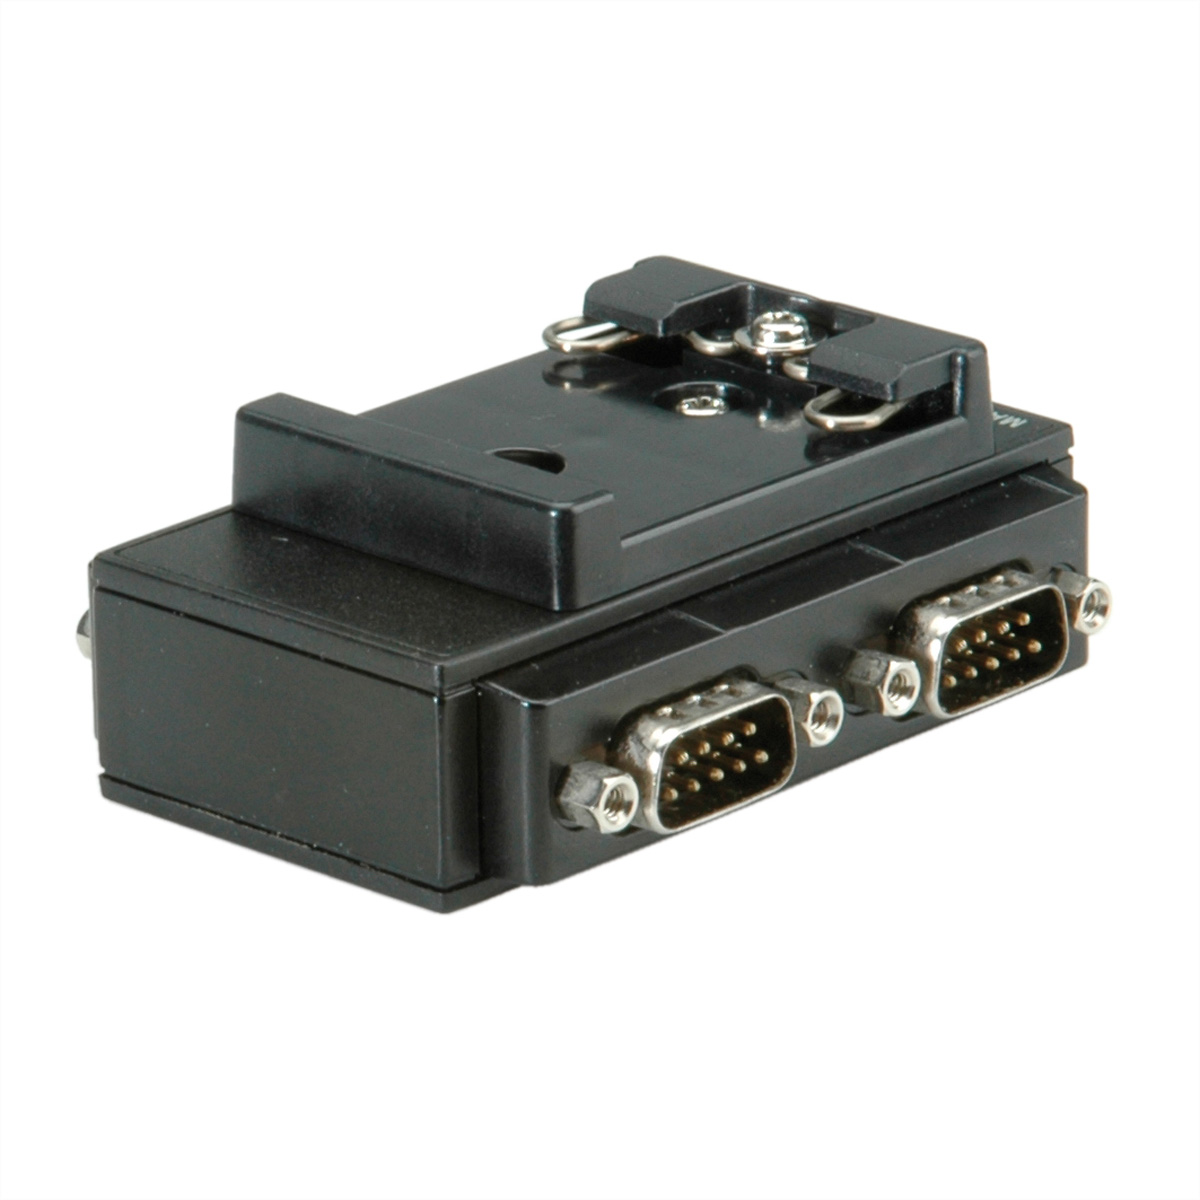 ROLINE USB Hutschiene, 2.0 RS232 Adapter Port DIN Konverter für 4 USB-Seriell nach